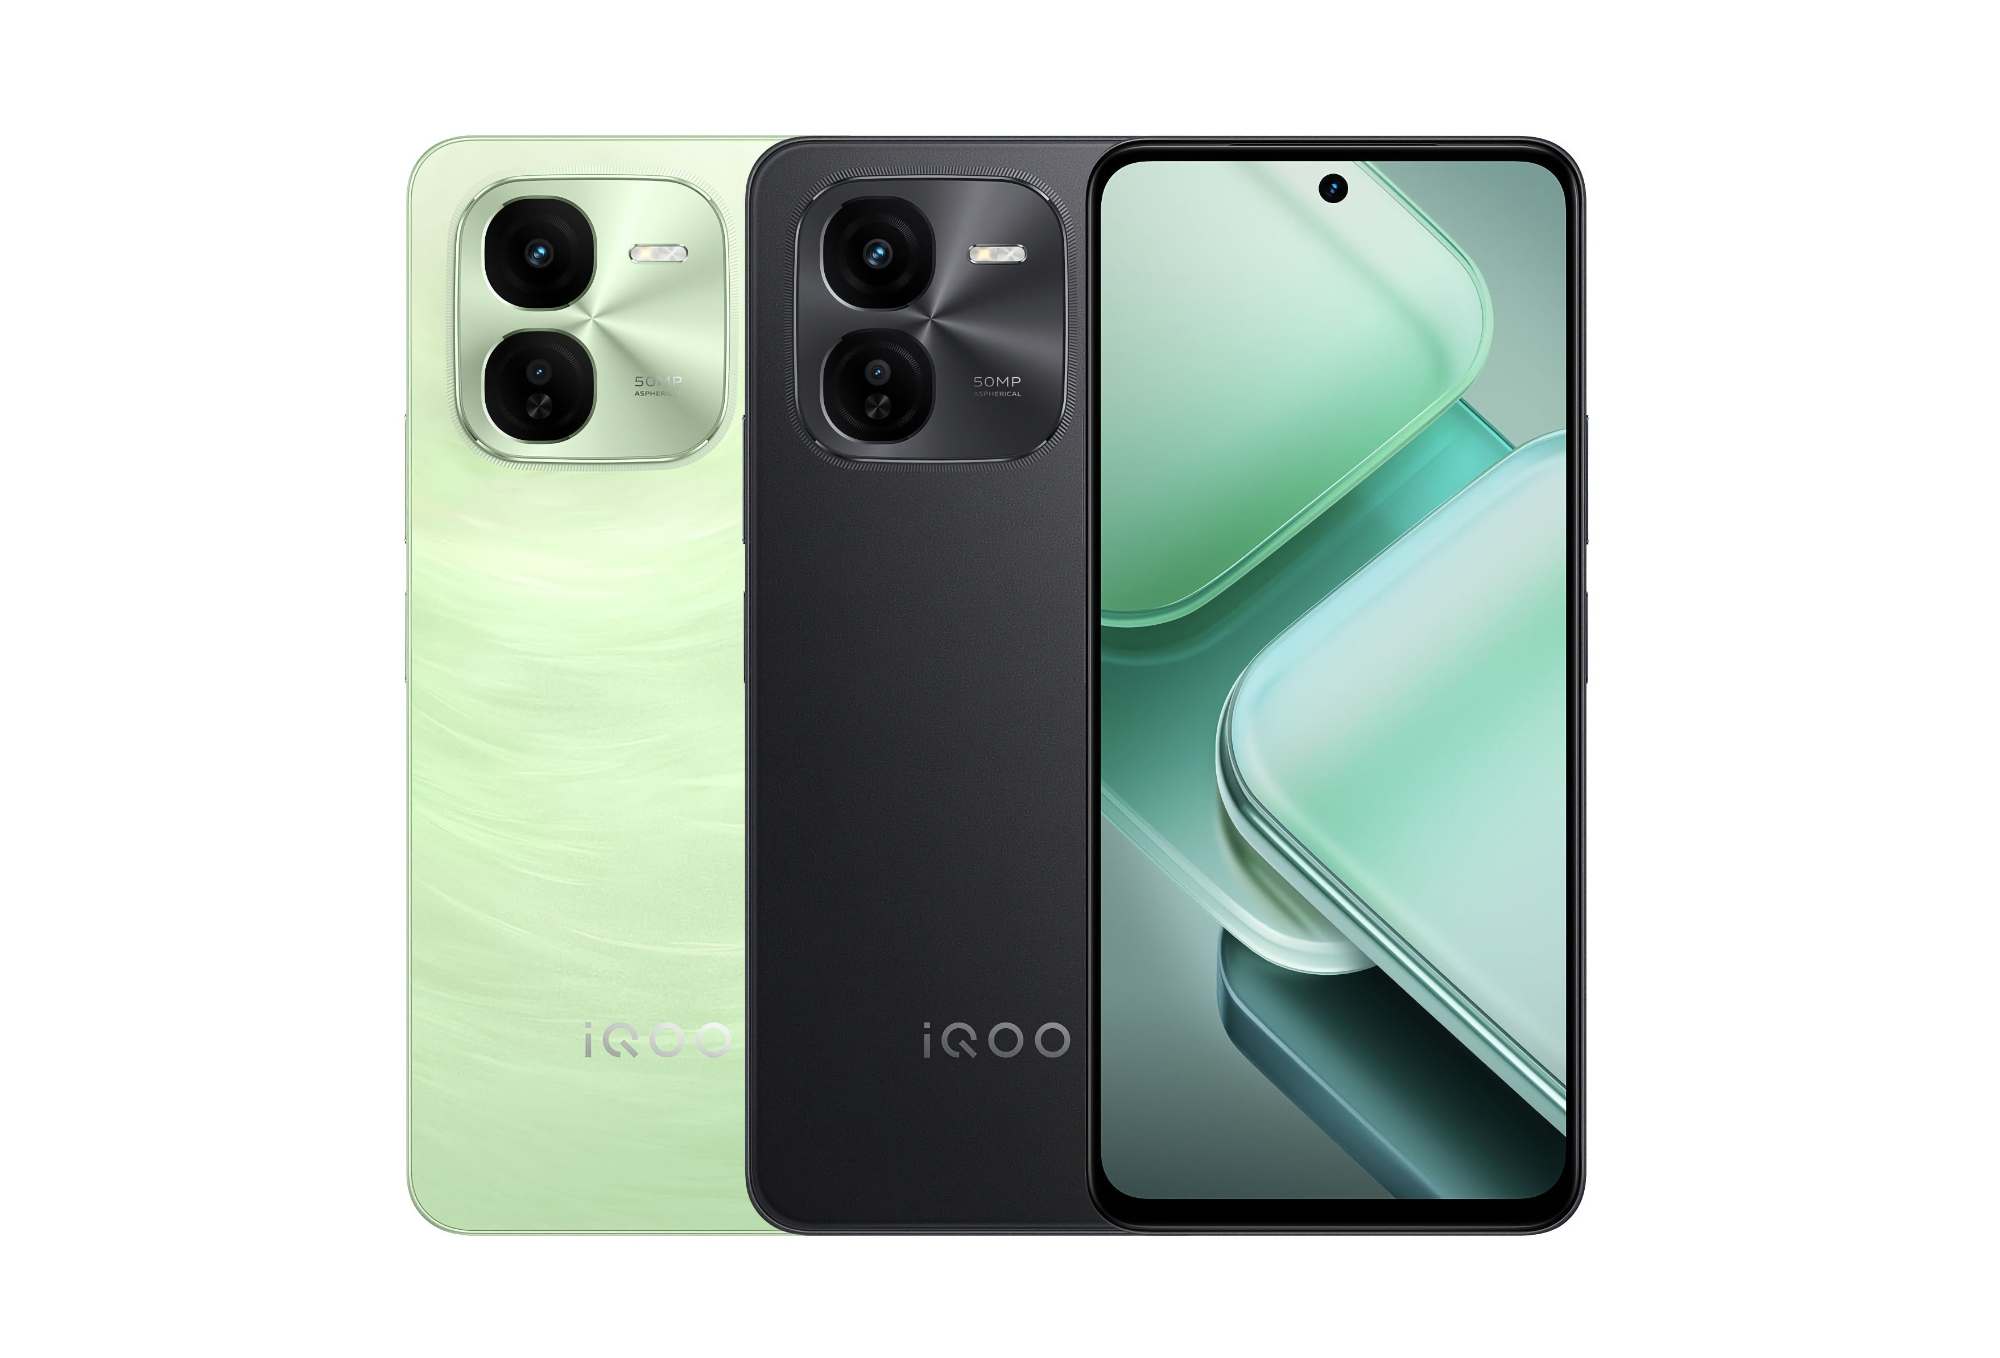 L'iQOO Z9x, doté d'un écran LCD 120 Hz, d'une puce Snapdragon 6 Gen 1 et d'une capacité de charge de 44 W, sera bientôt commercialisé en dehors de la Chine.